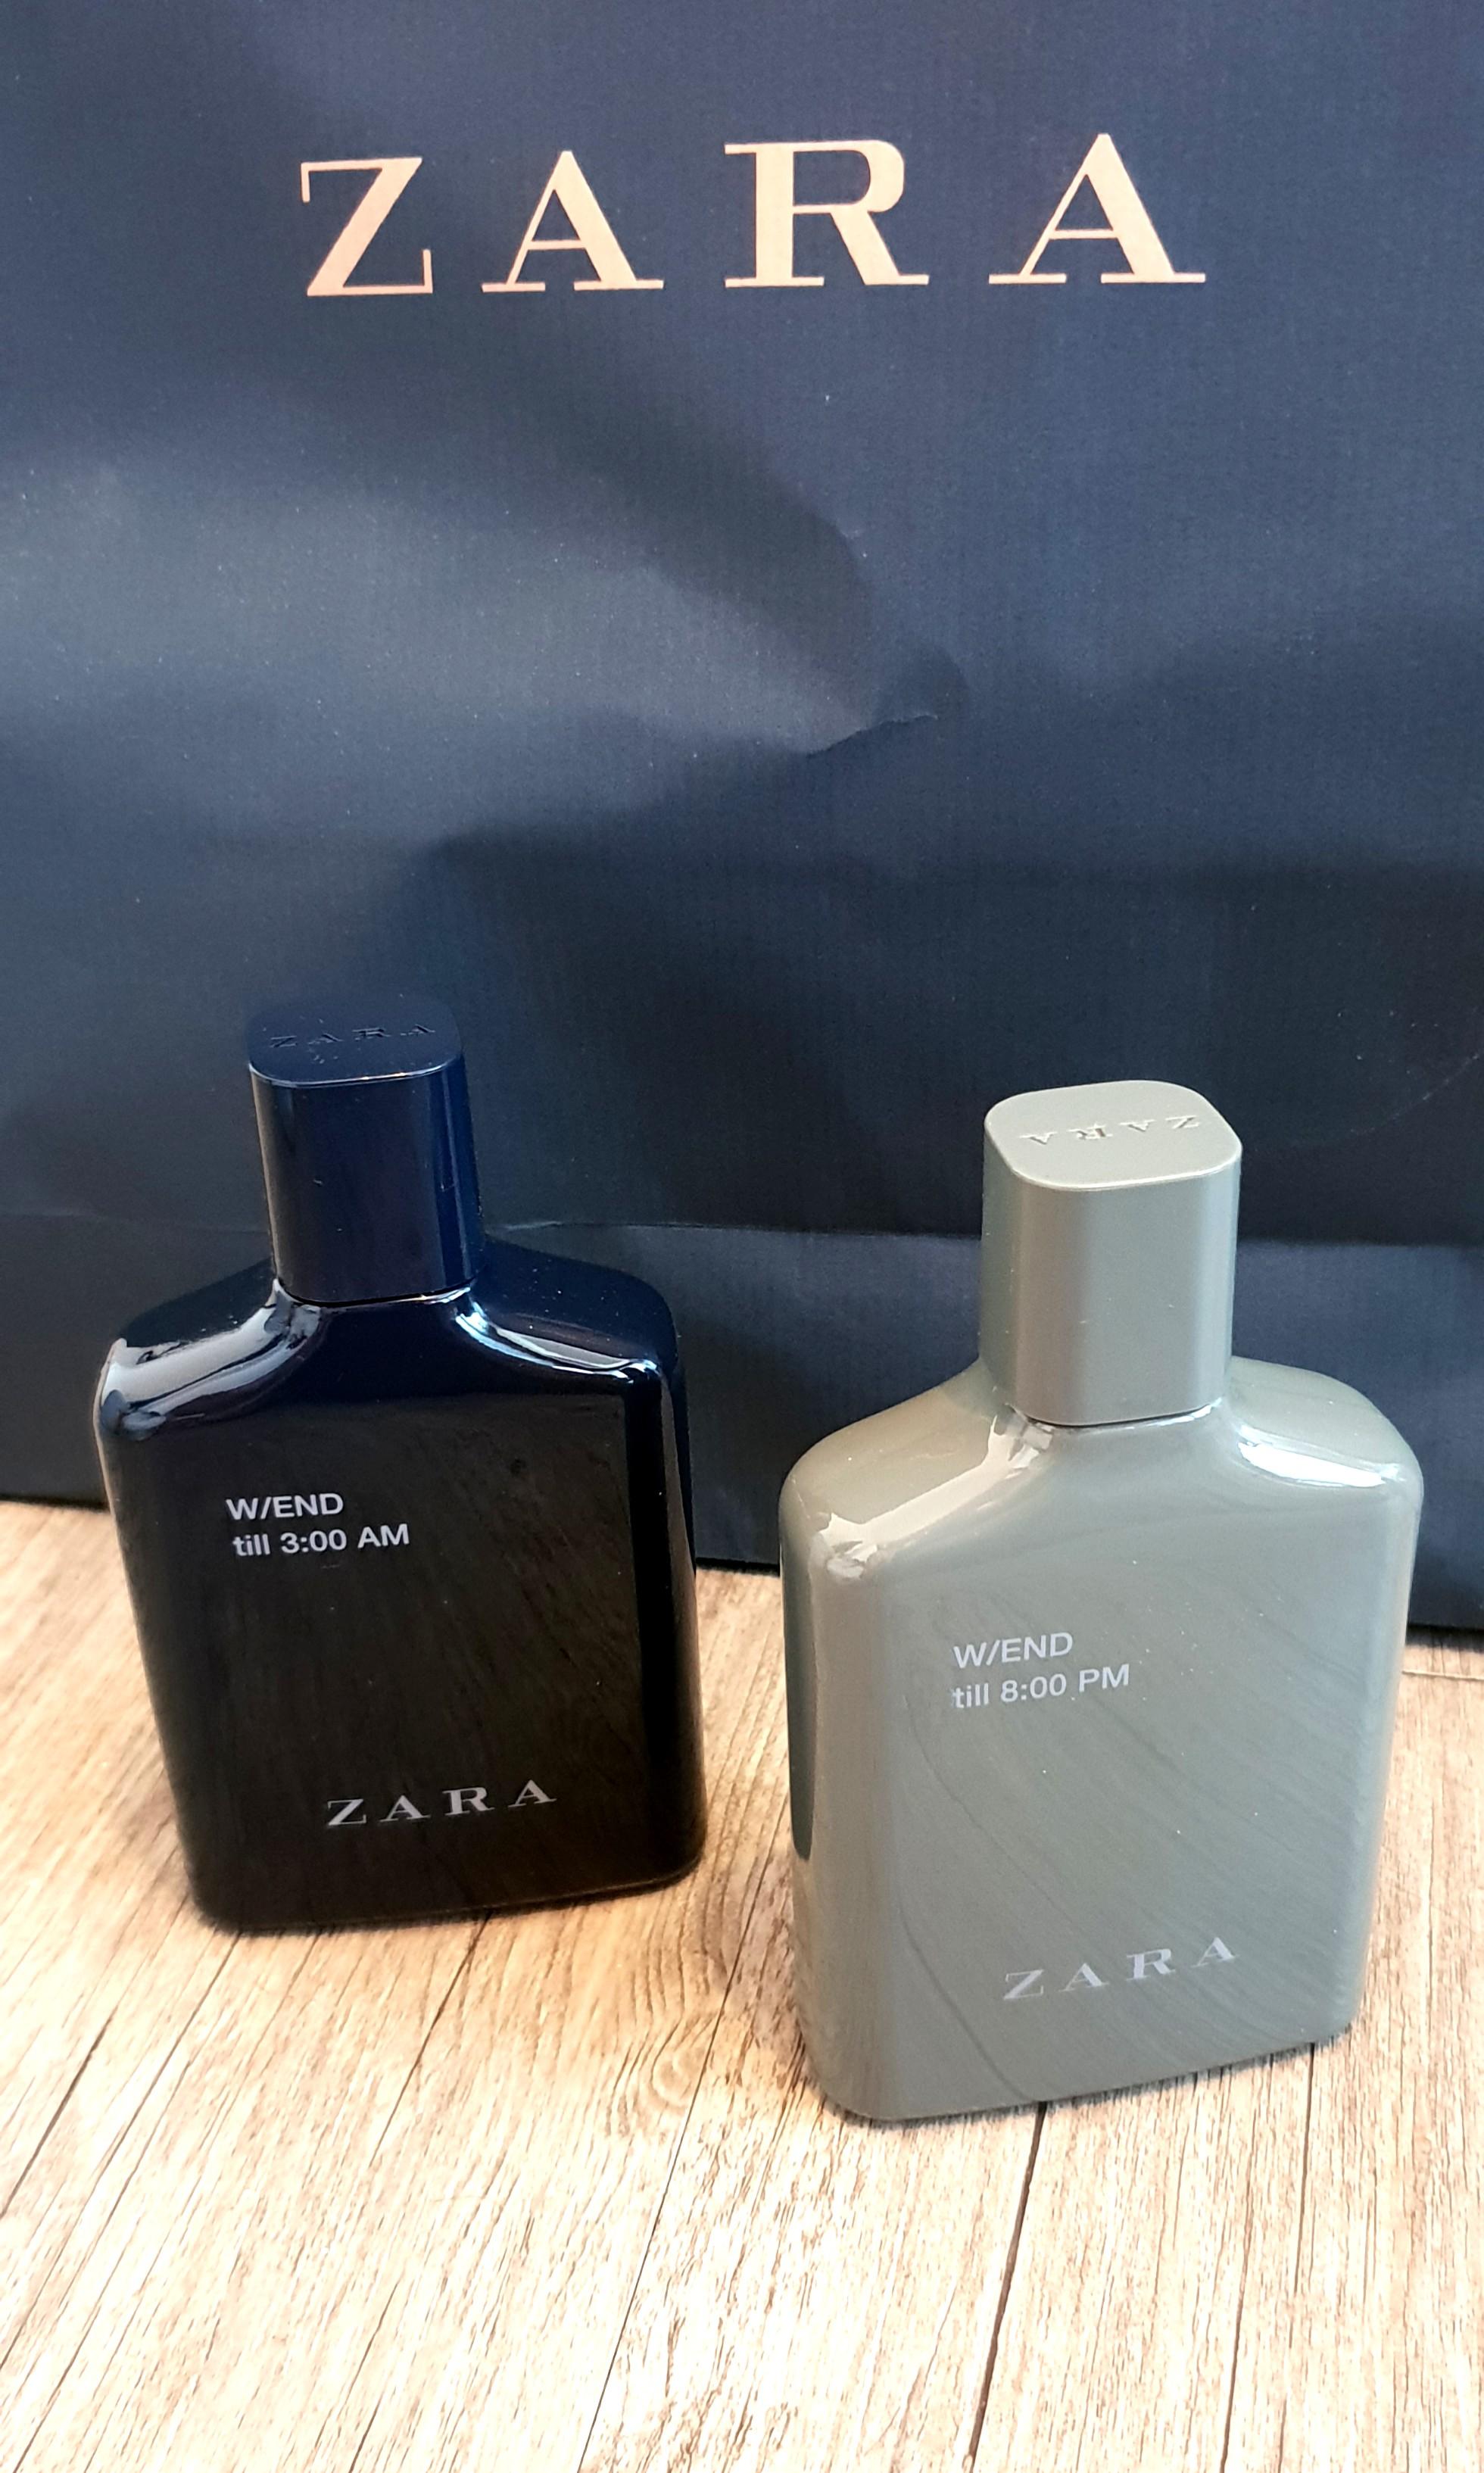 Zara Men Perfume Set 100ml Each W End 8pm And 3am Health